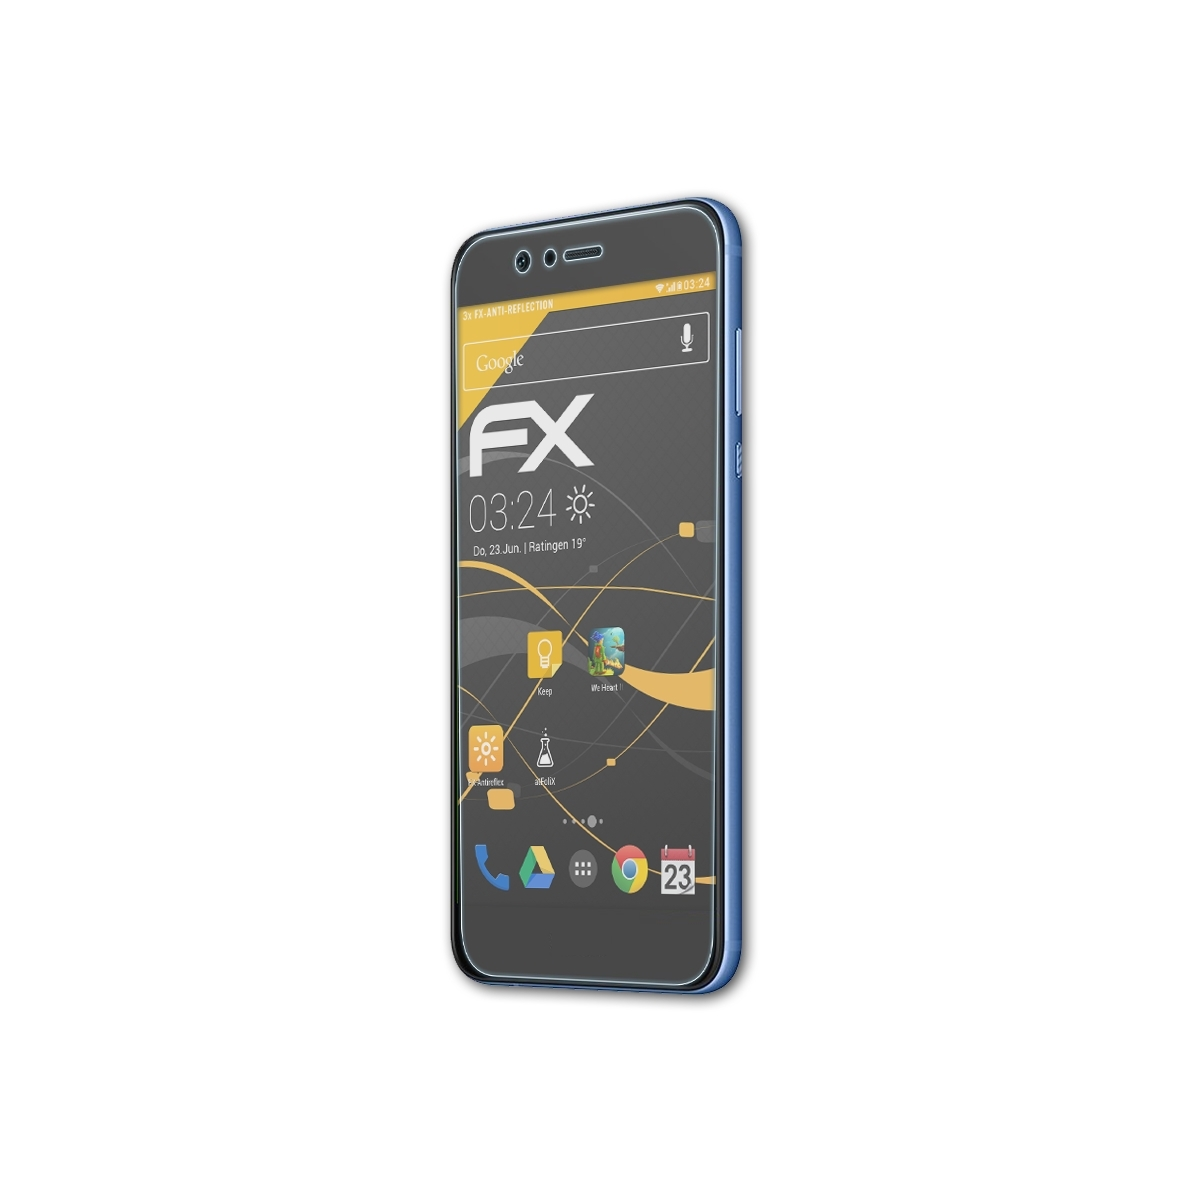 Displayschutz(für ATFOLIX Huawei 2 3x FX-Antireflex Nova Plus)